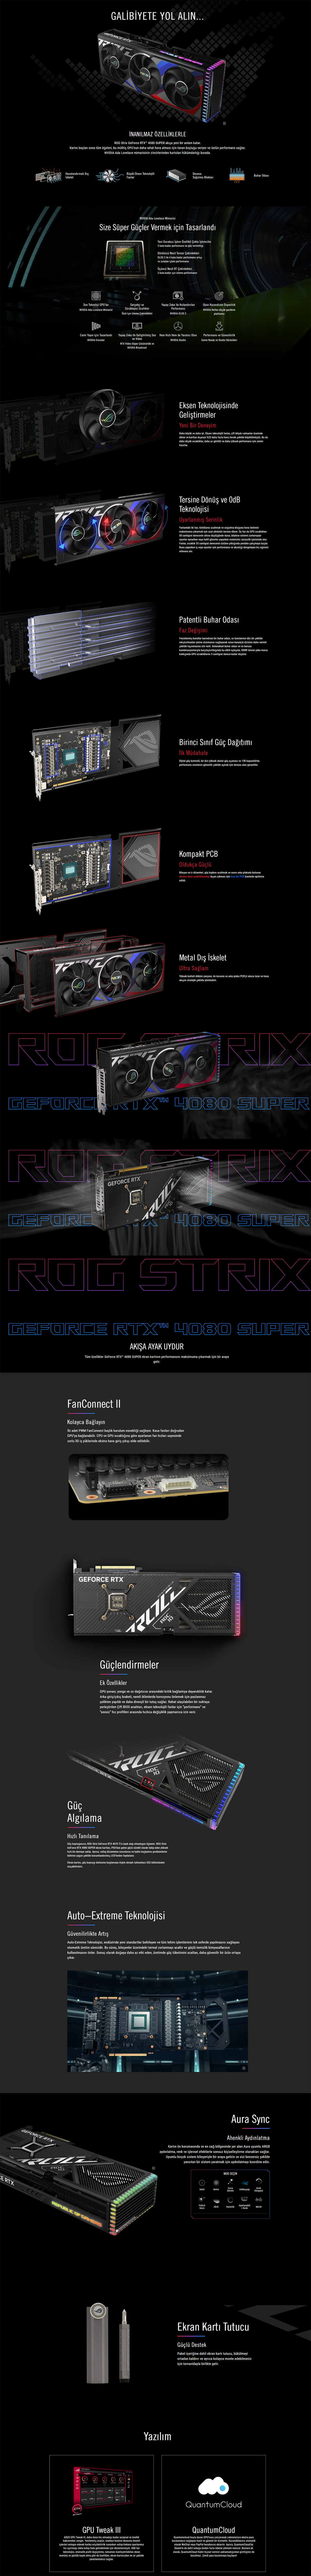 rog strix4080 super